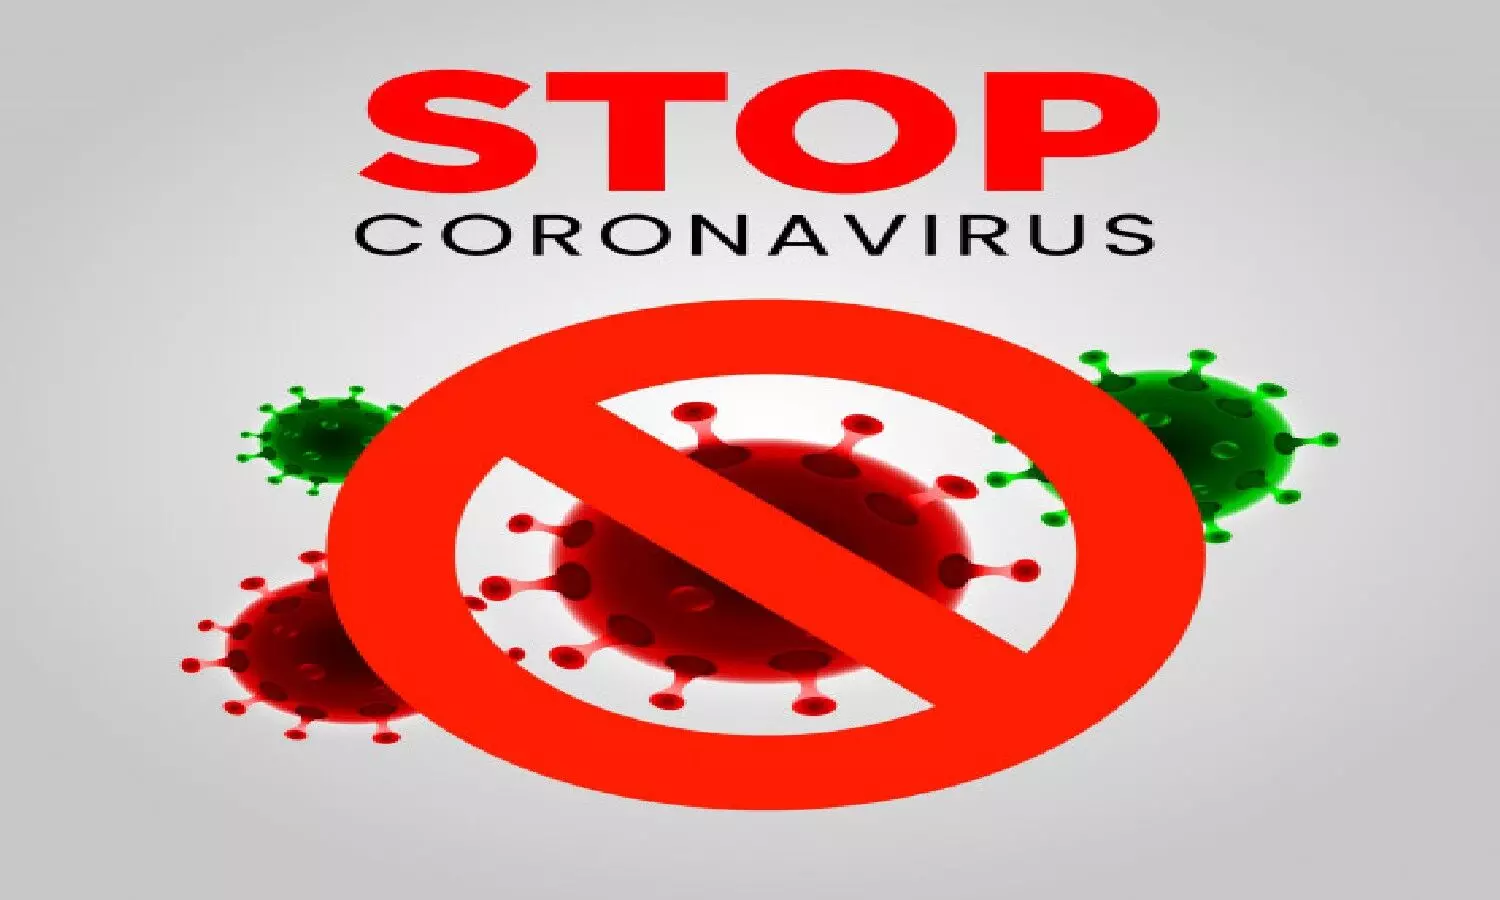 कोरोना वैक्सीनेशन का तीसरा फेज शुरू होने से पहले ही भारत बायोटेक ने भी राज्यों के लिए कोवैक्सीन के दाम घटा दिए हैं। कोवैक्सीन कम कर दिए